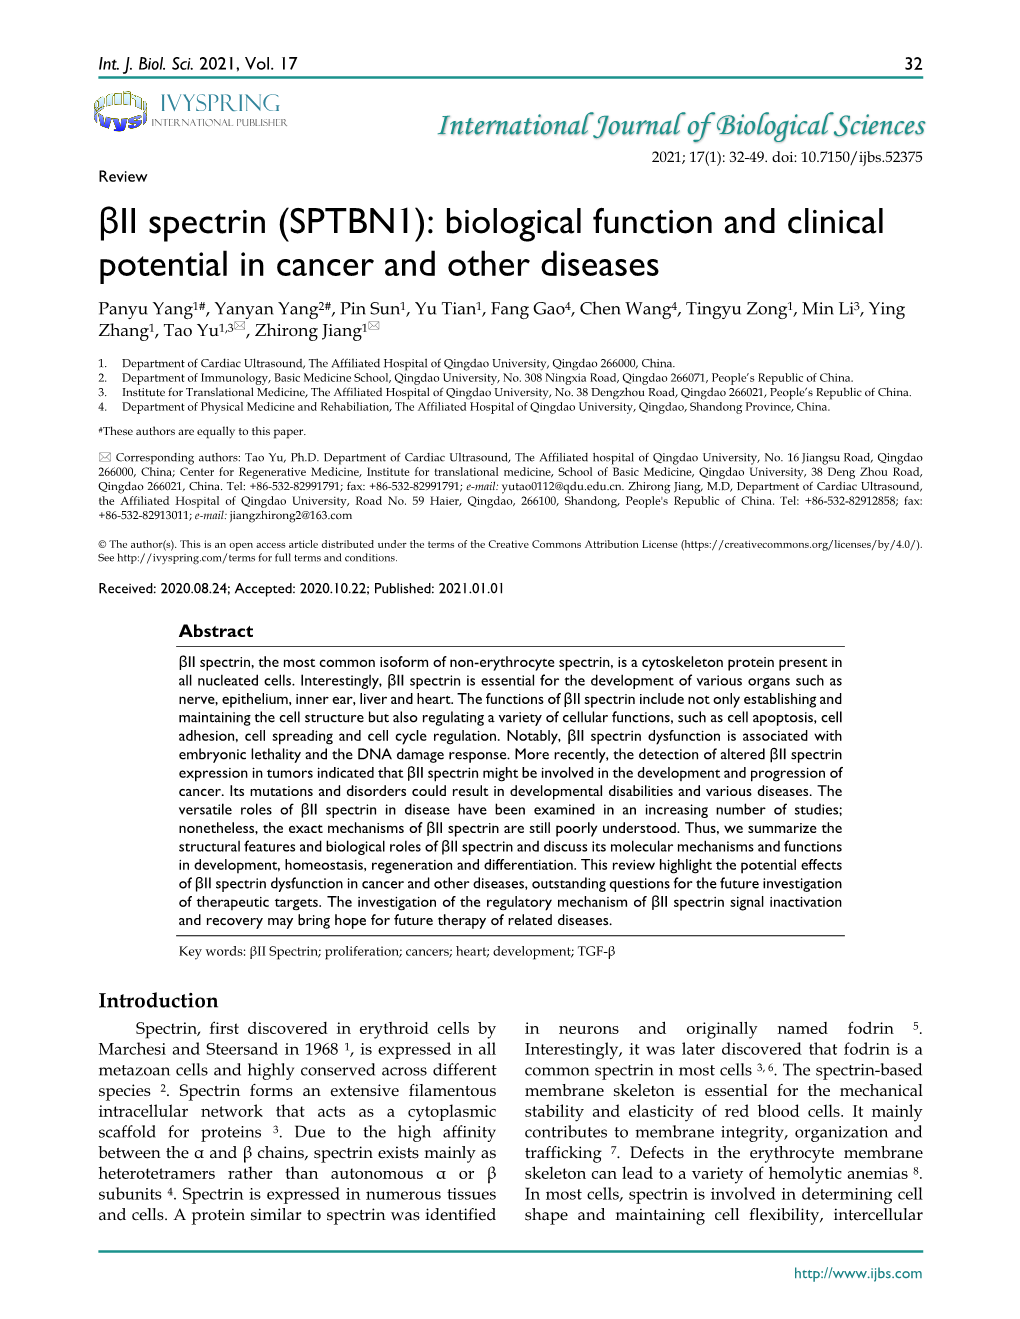 Βii Spectrin (SPTBN1): Biological Function and Clinical Potential In